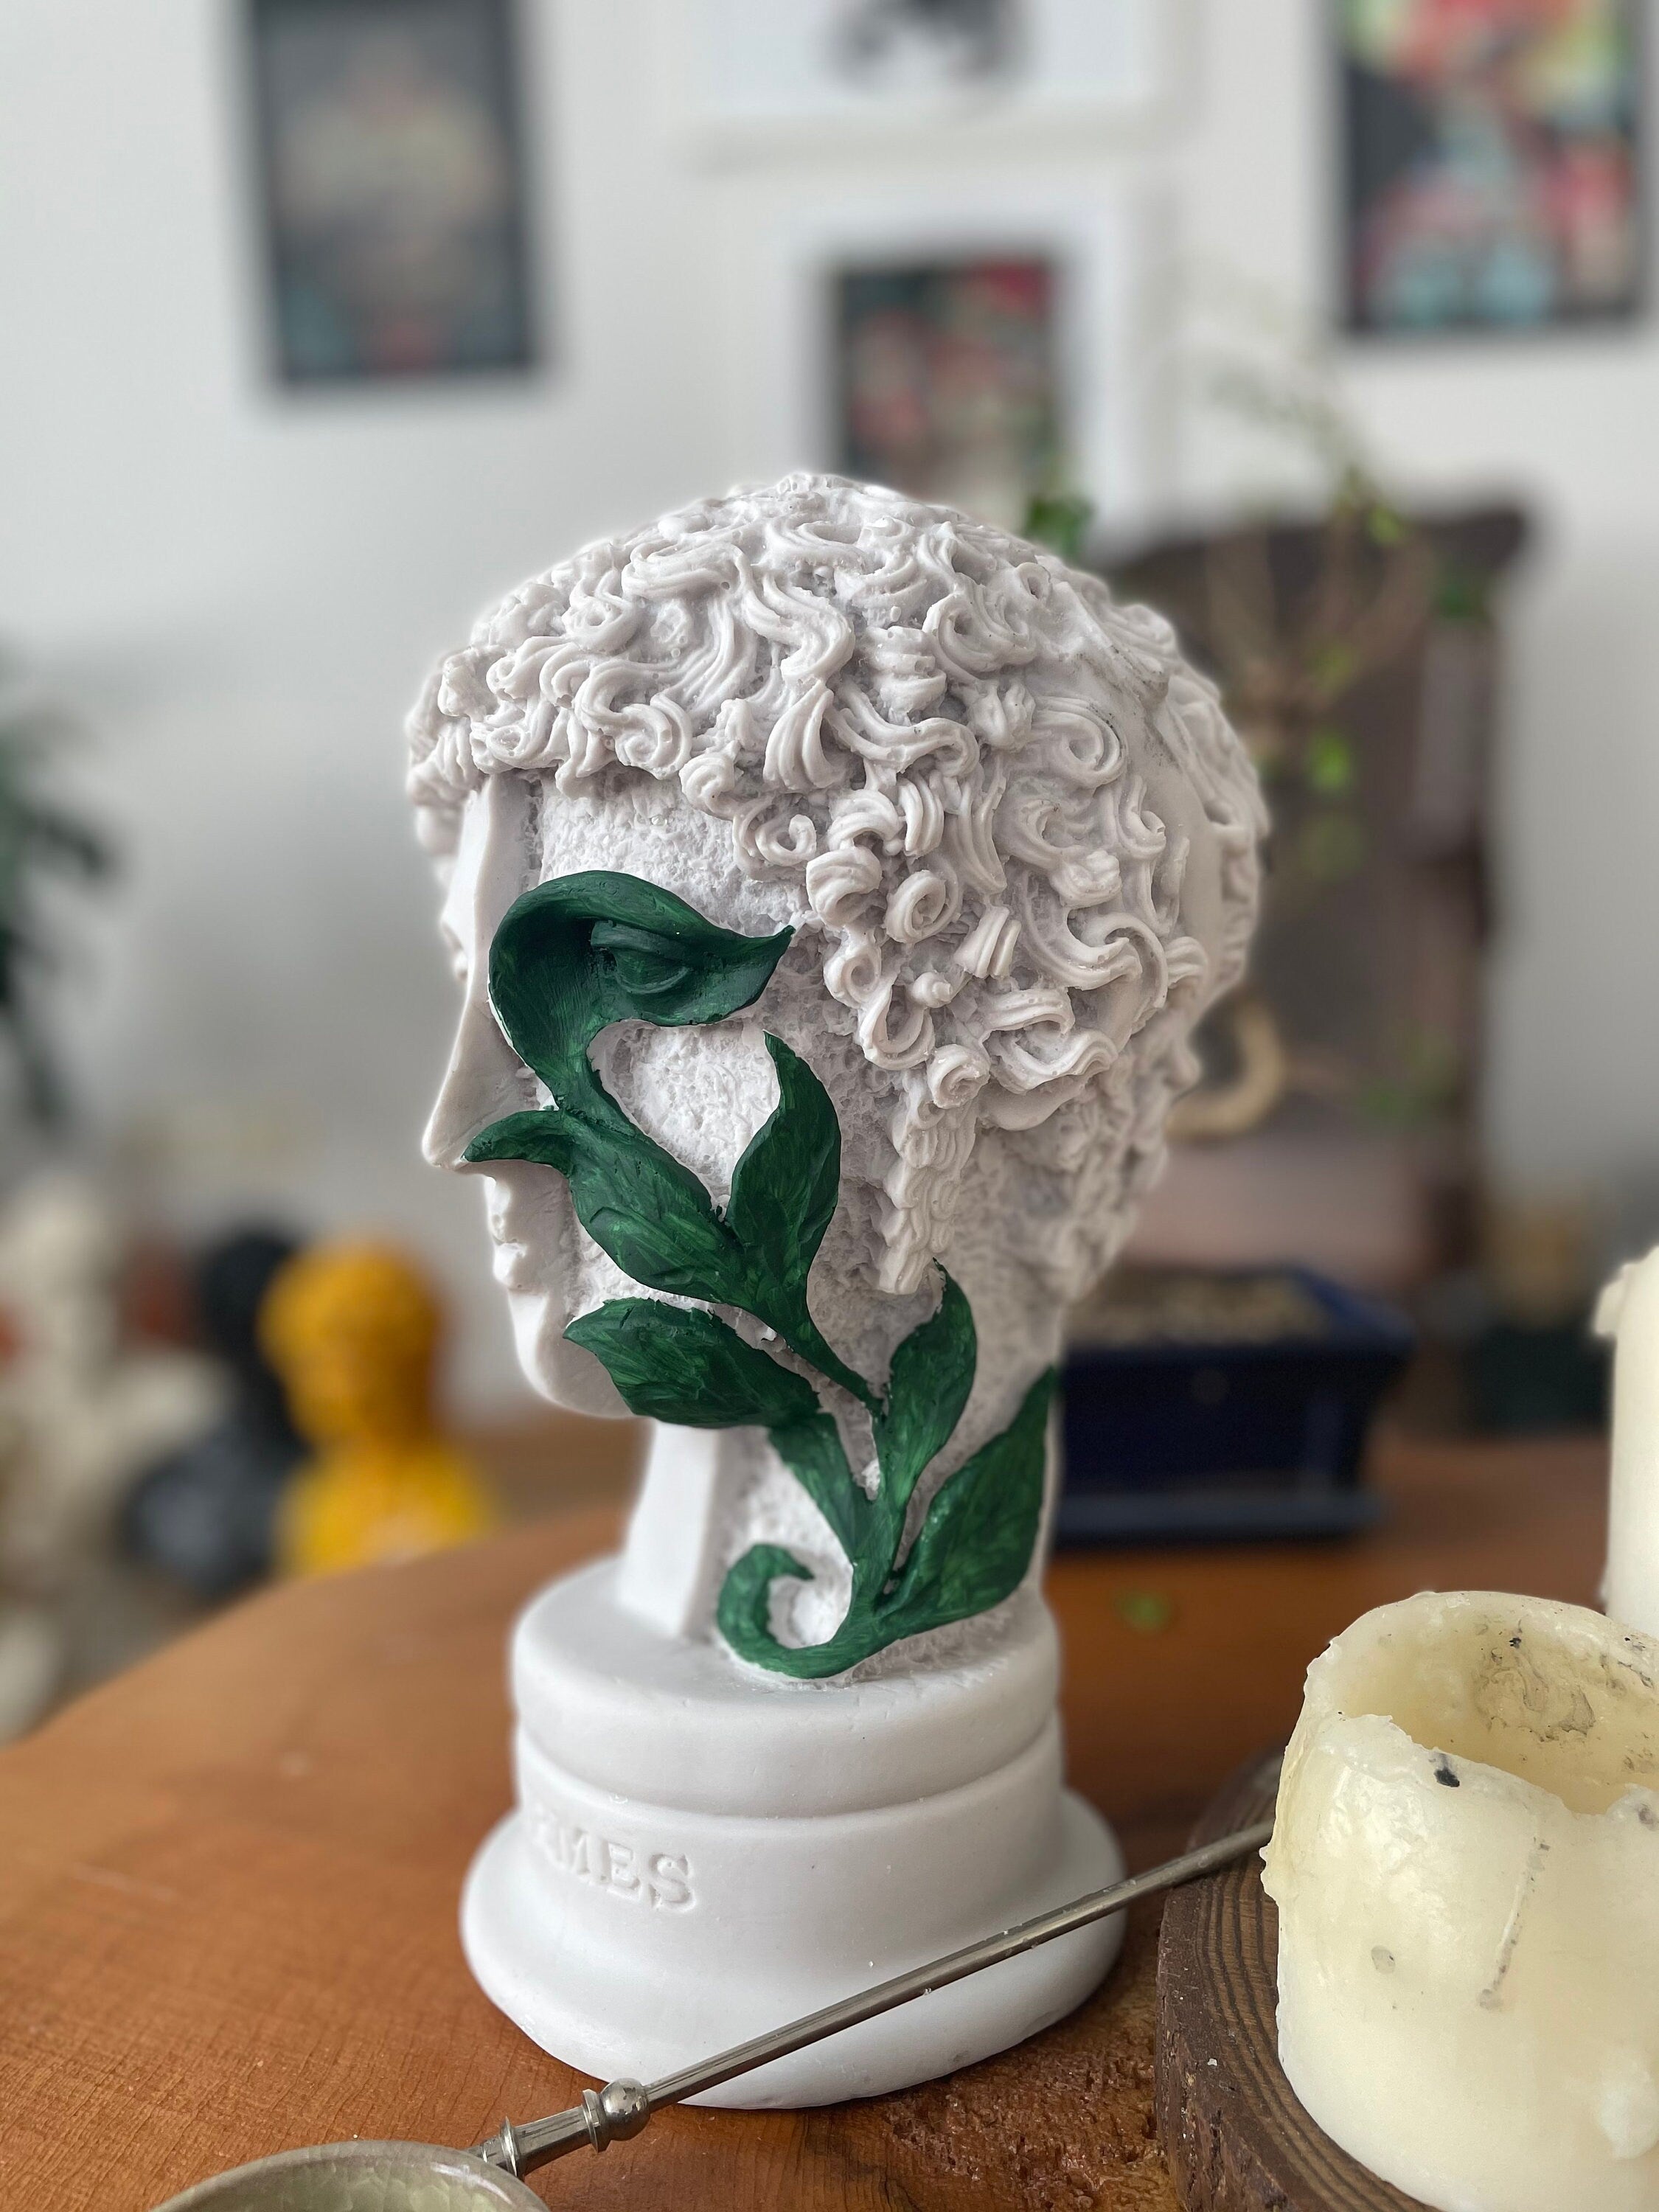 Eternal Elegance: Large Hermes Bust Sculpture with Green Ivy Design